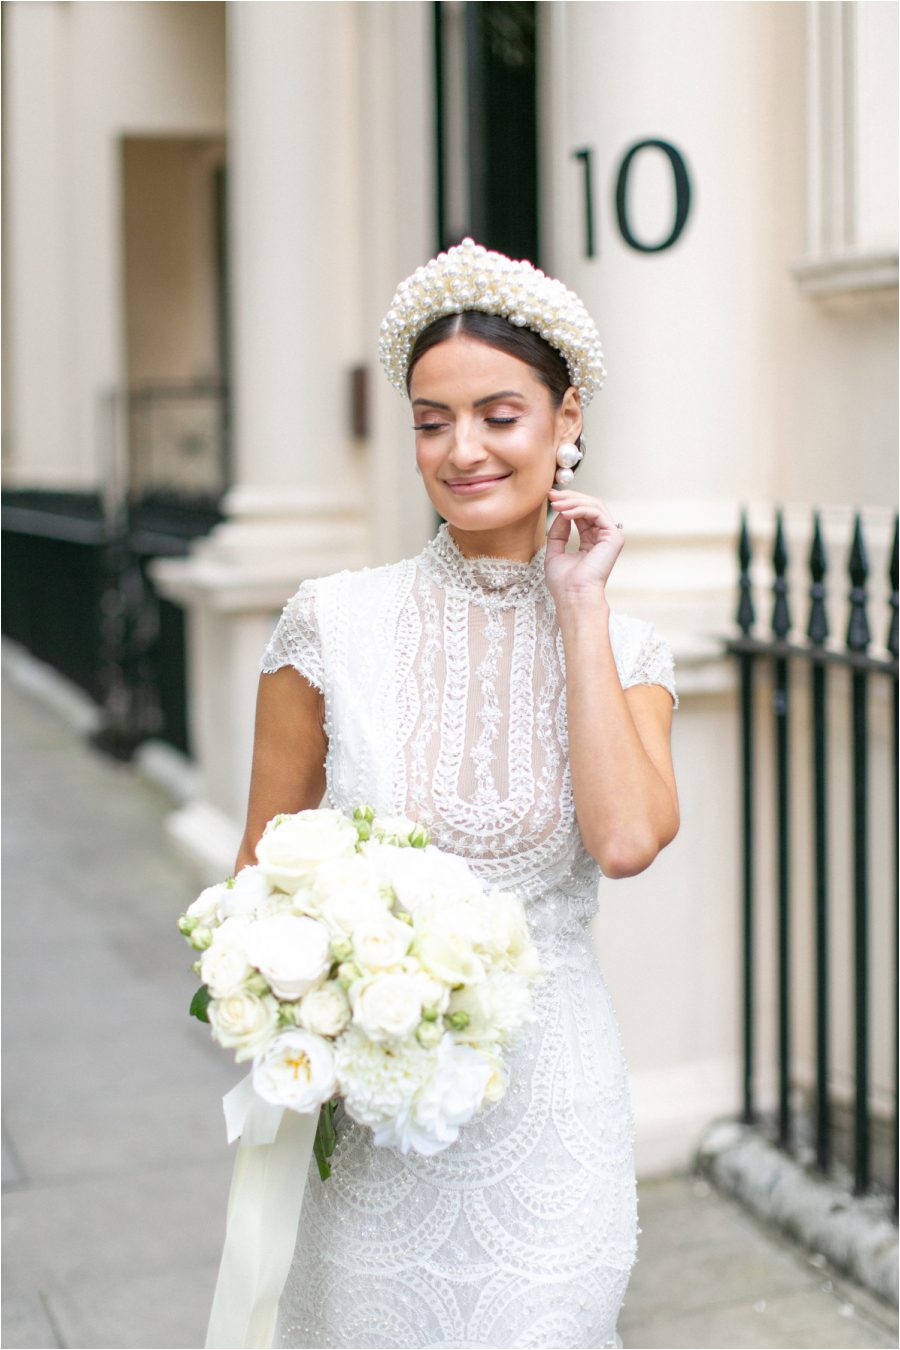 White on white wedding ideas for modern brides